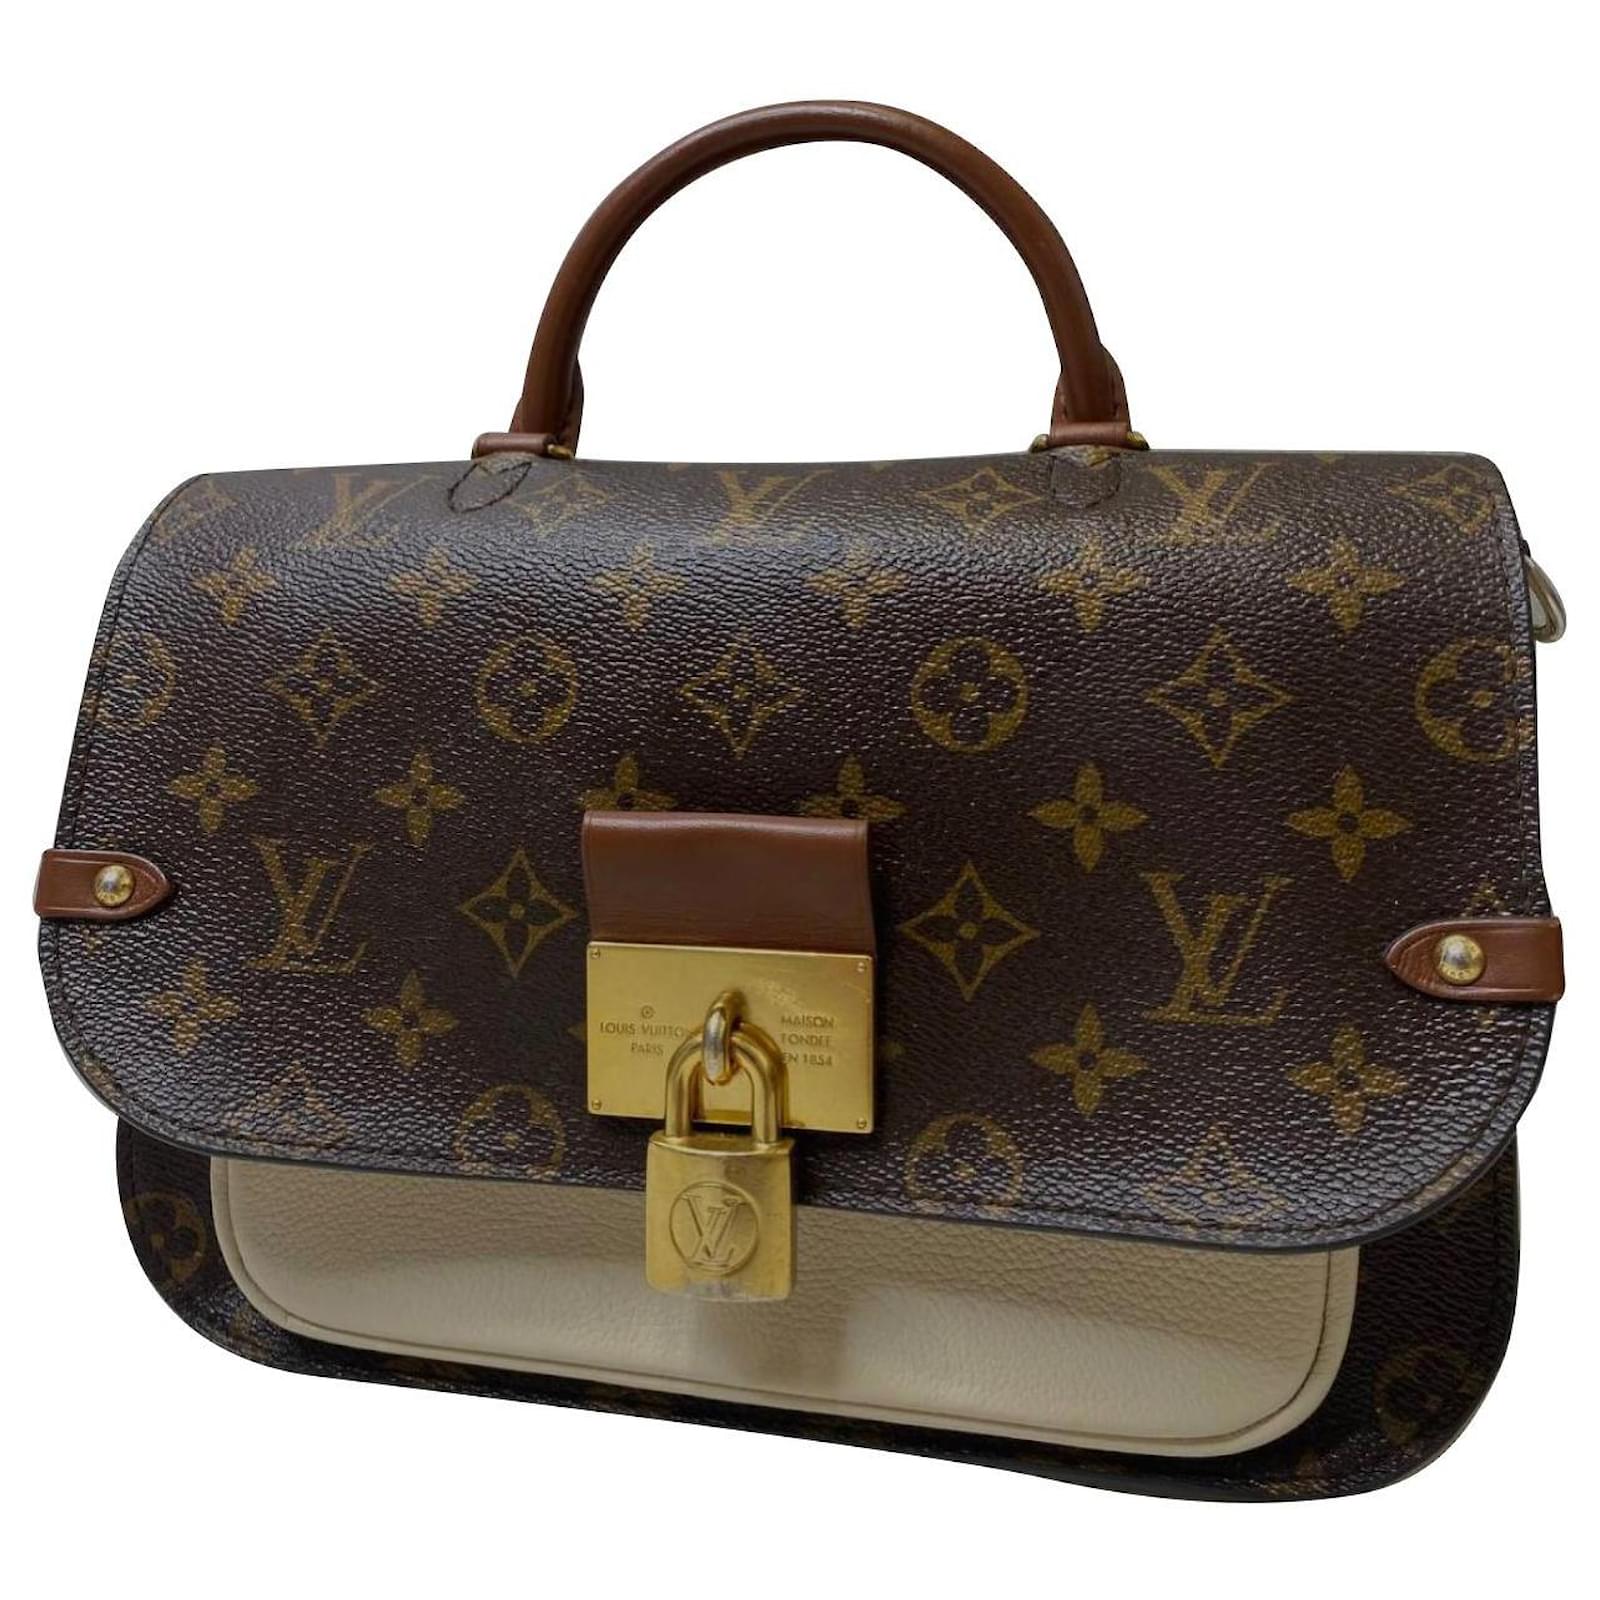 Louis Vuitton Caramel Calfskin Handbag